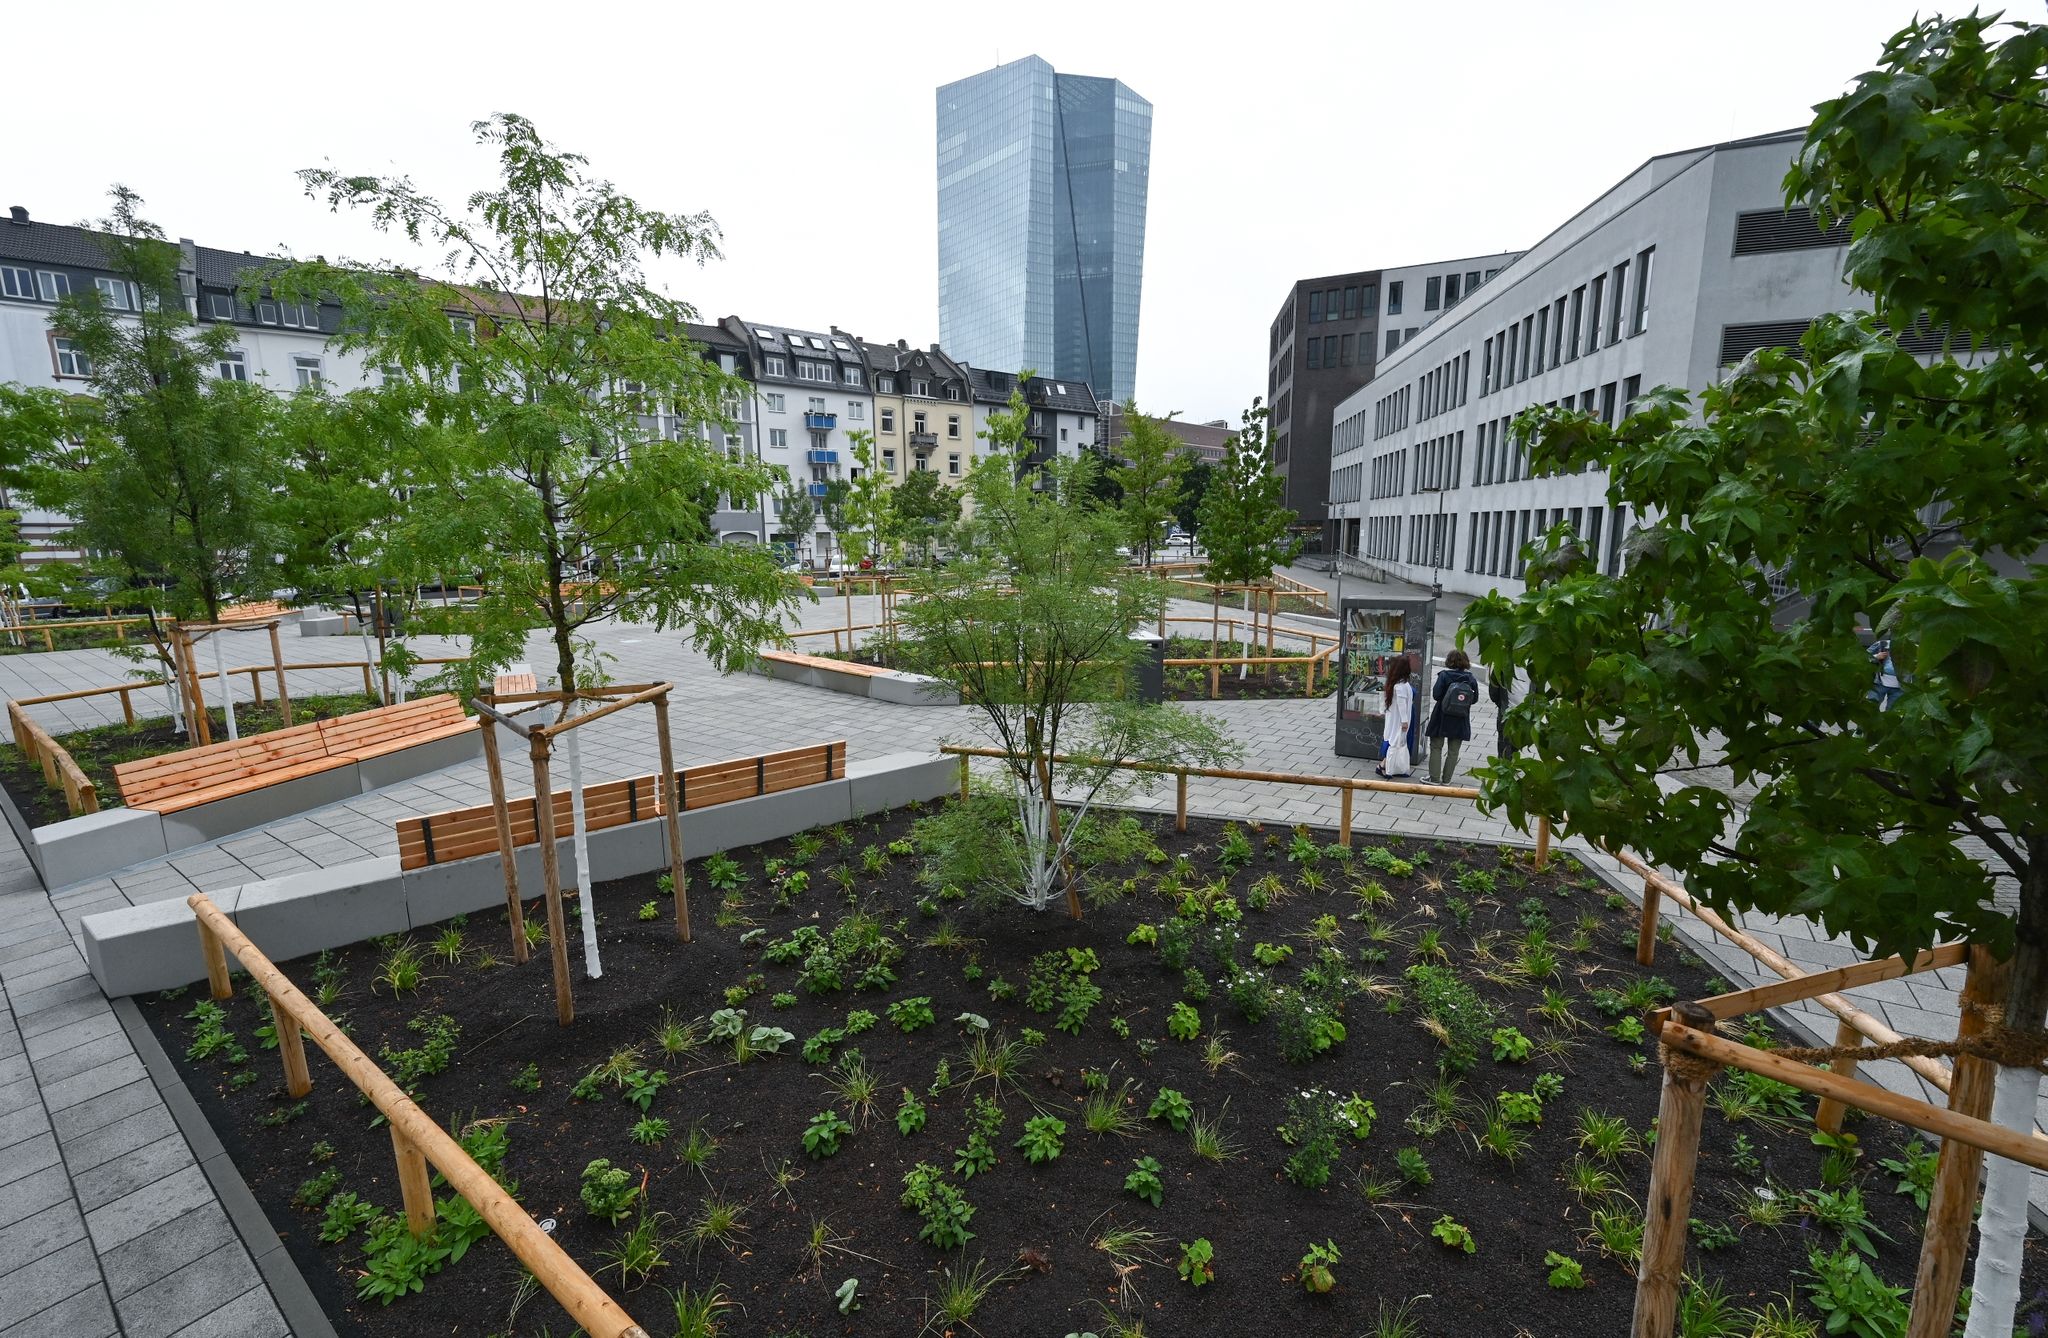 Mit neuen Grünflächen und Bäumen präsentiert sich der Paul-Arnsberg-Platz im Frankfurter Stadtteil Ostend nach der klimafreundlichen Umgestaltung.